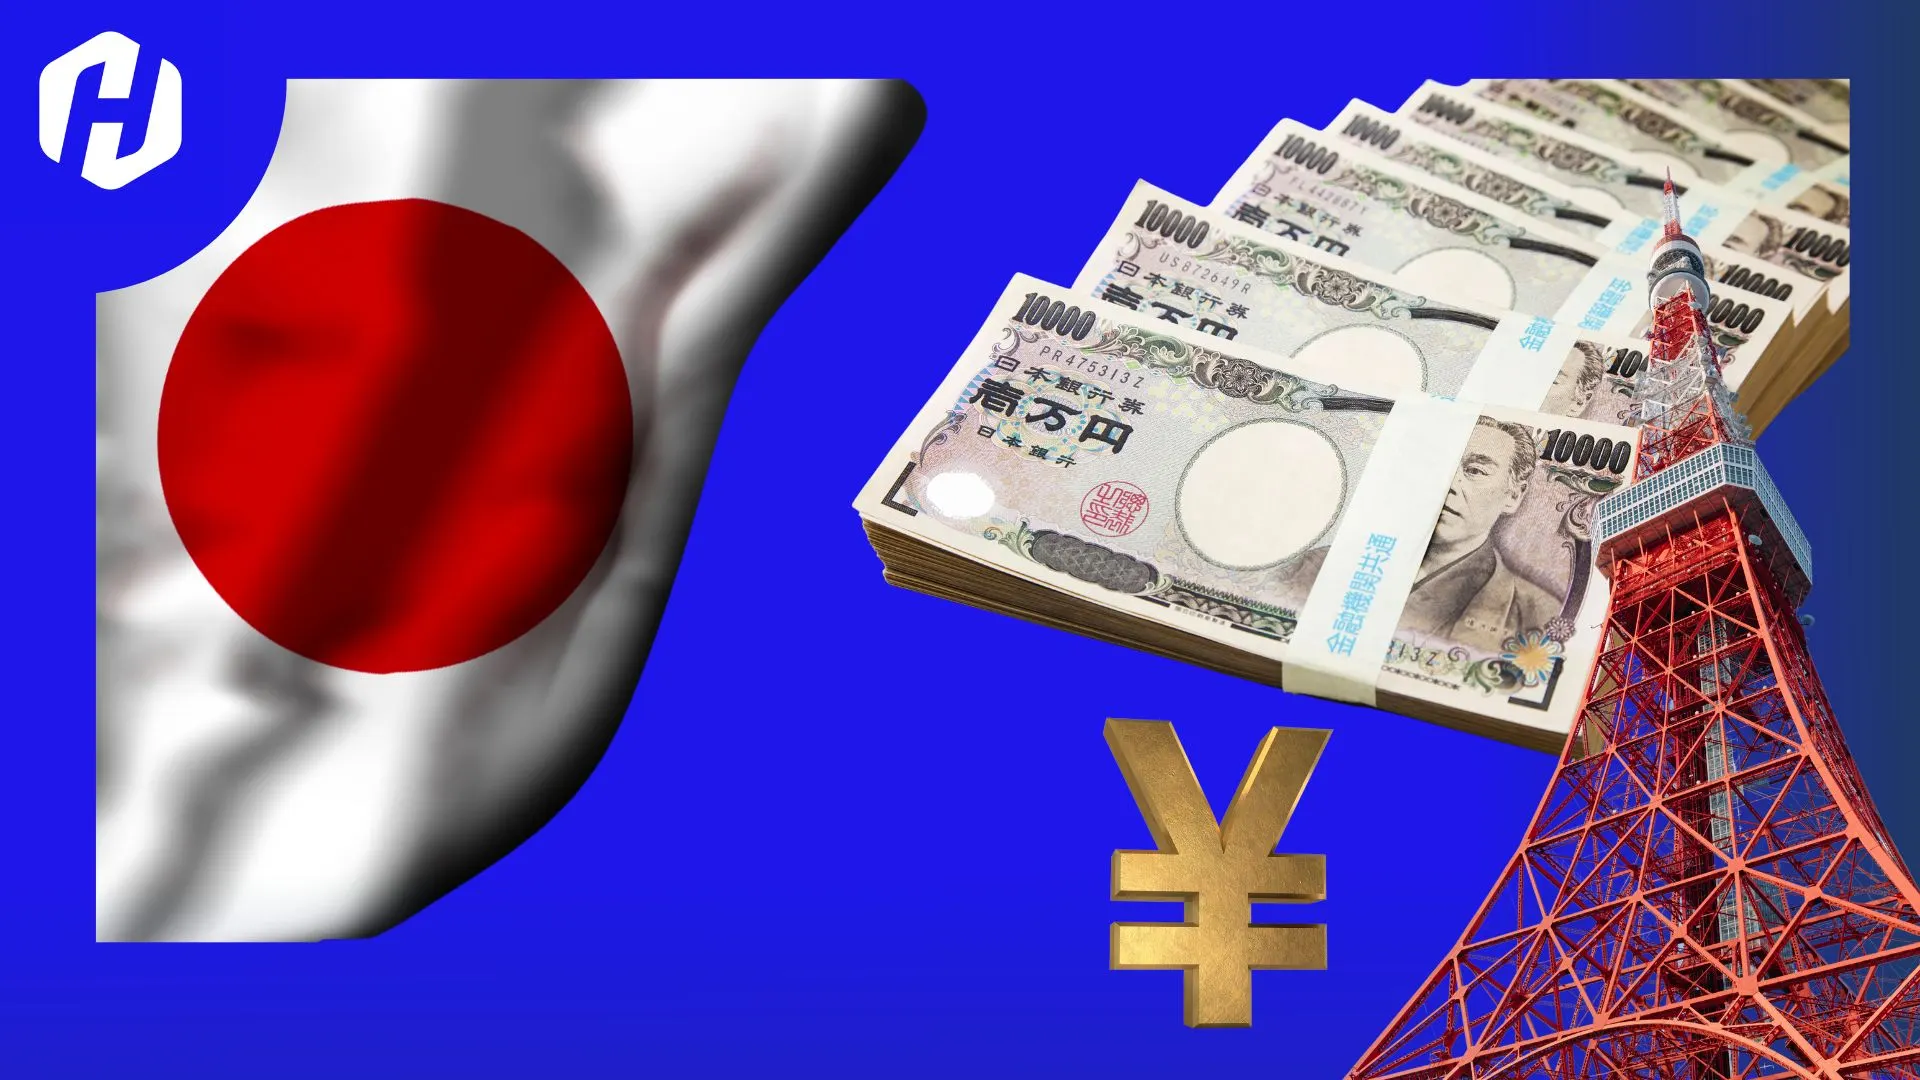 Kisah Seru di Balik Sejarah Yen, Mata Uang Jepang